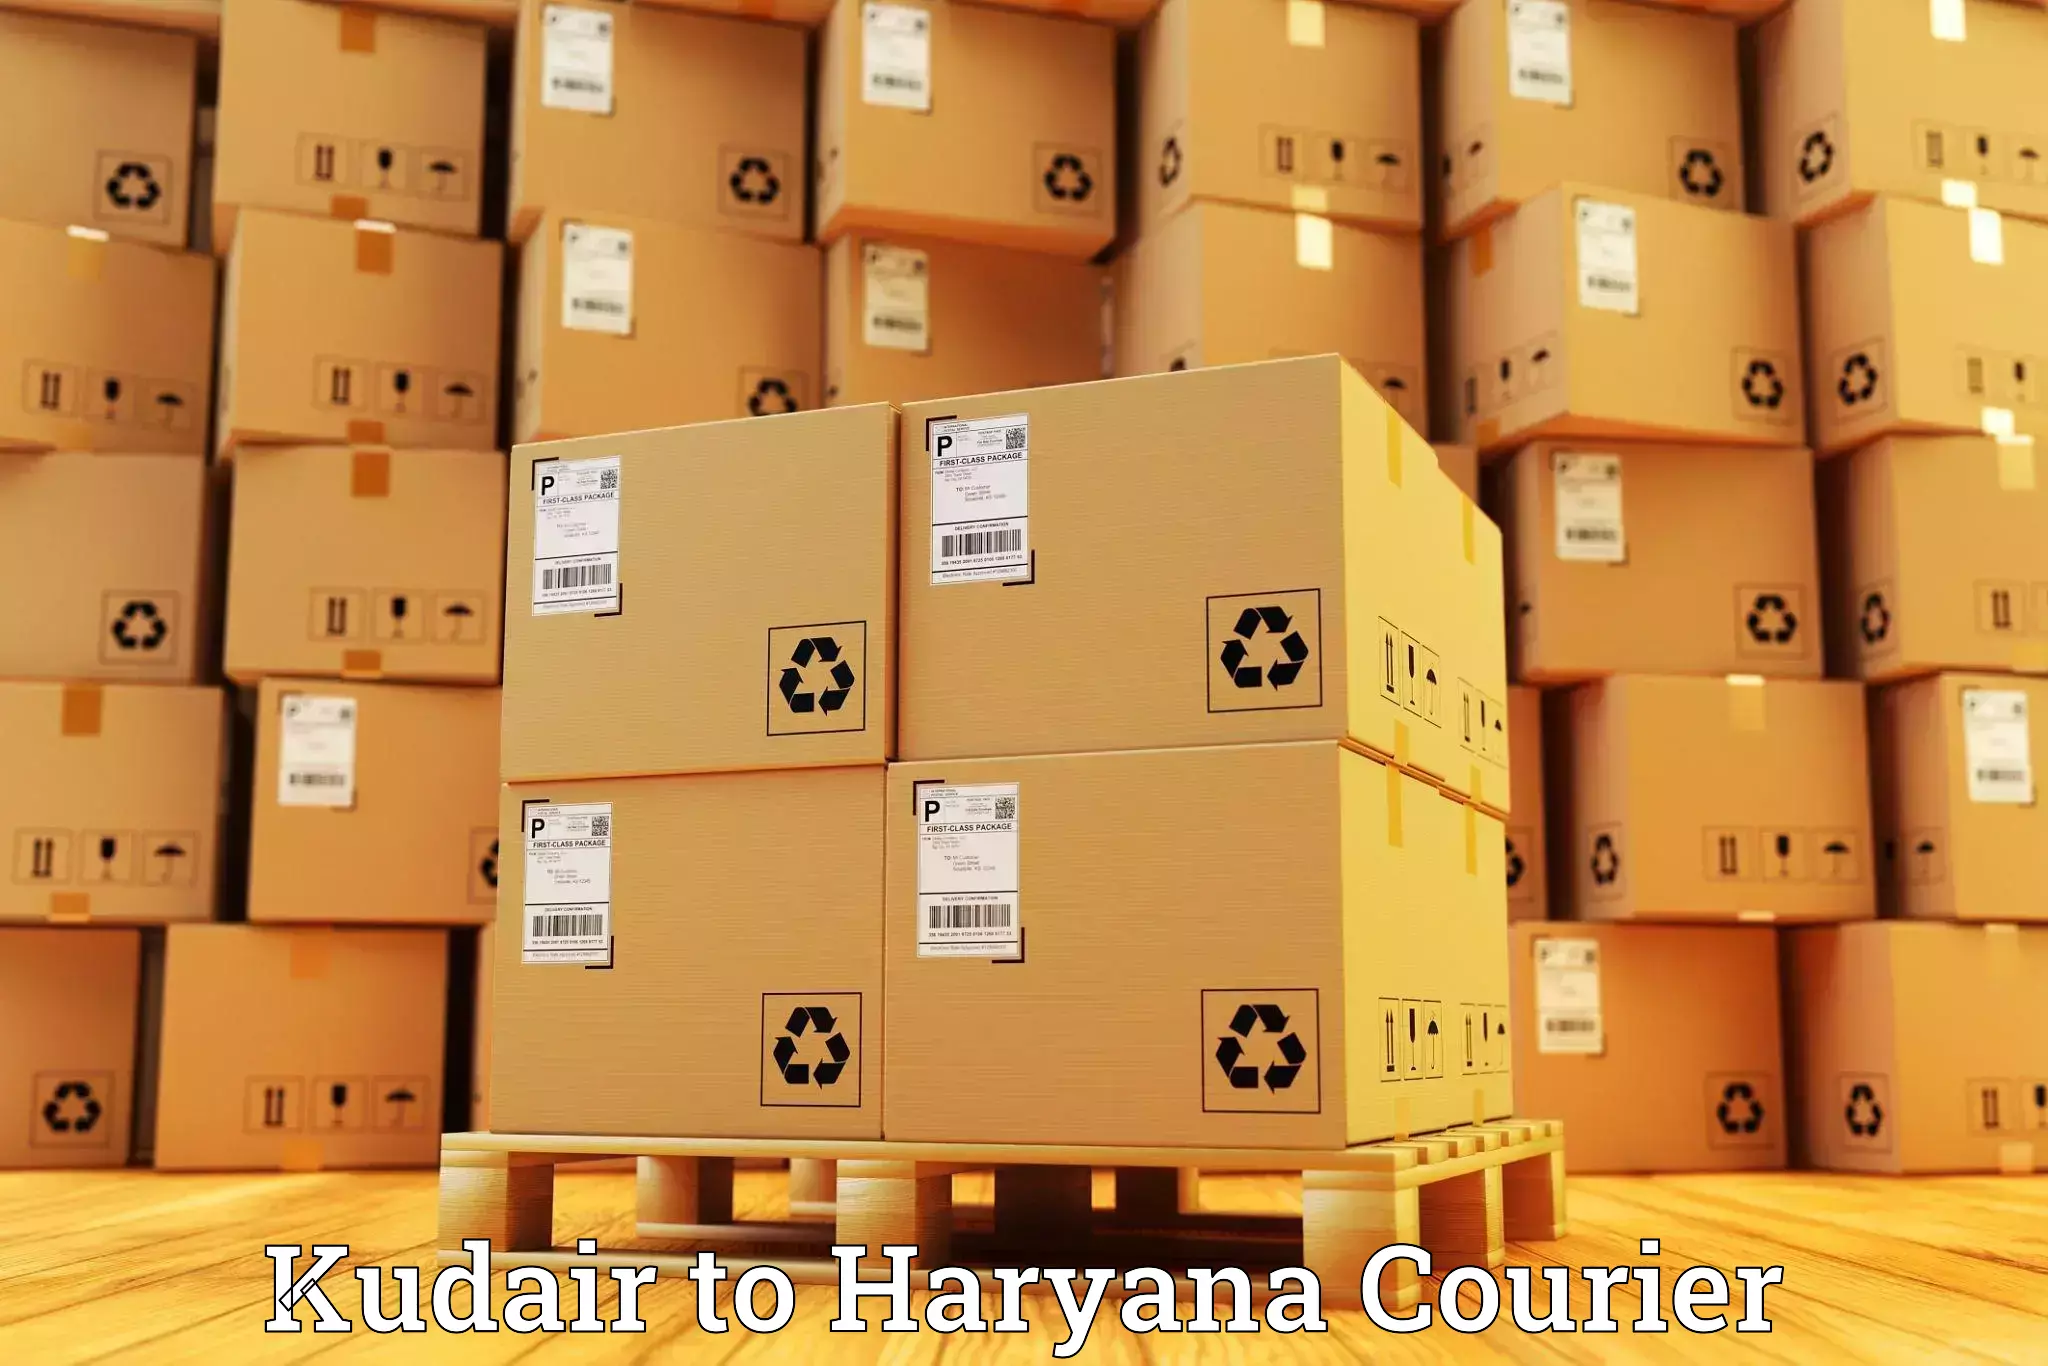 High-performance logistics Kudair to Assandh